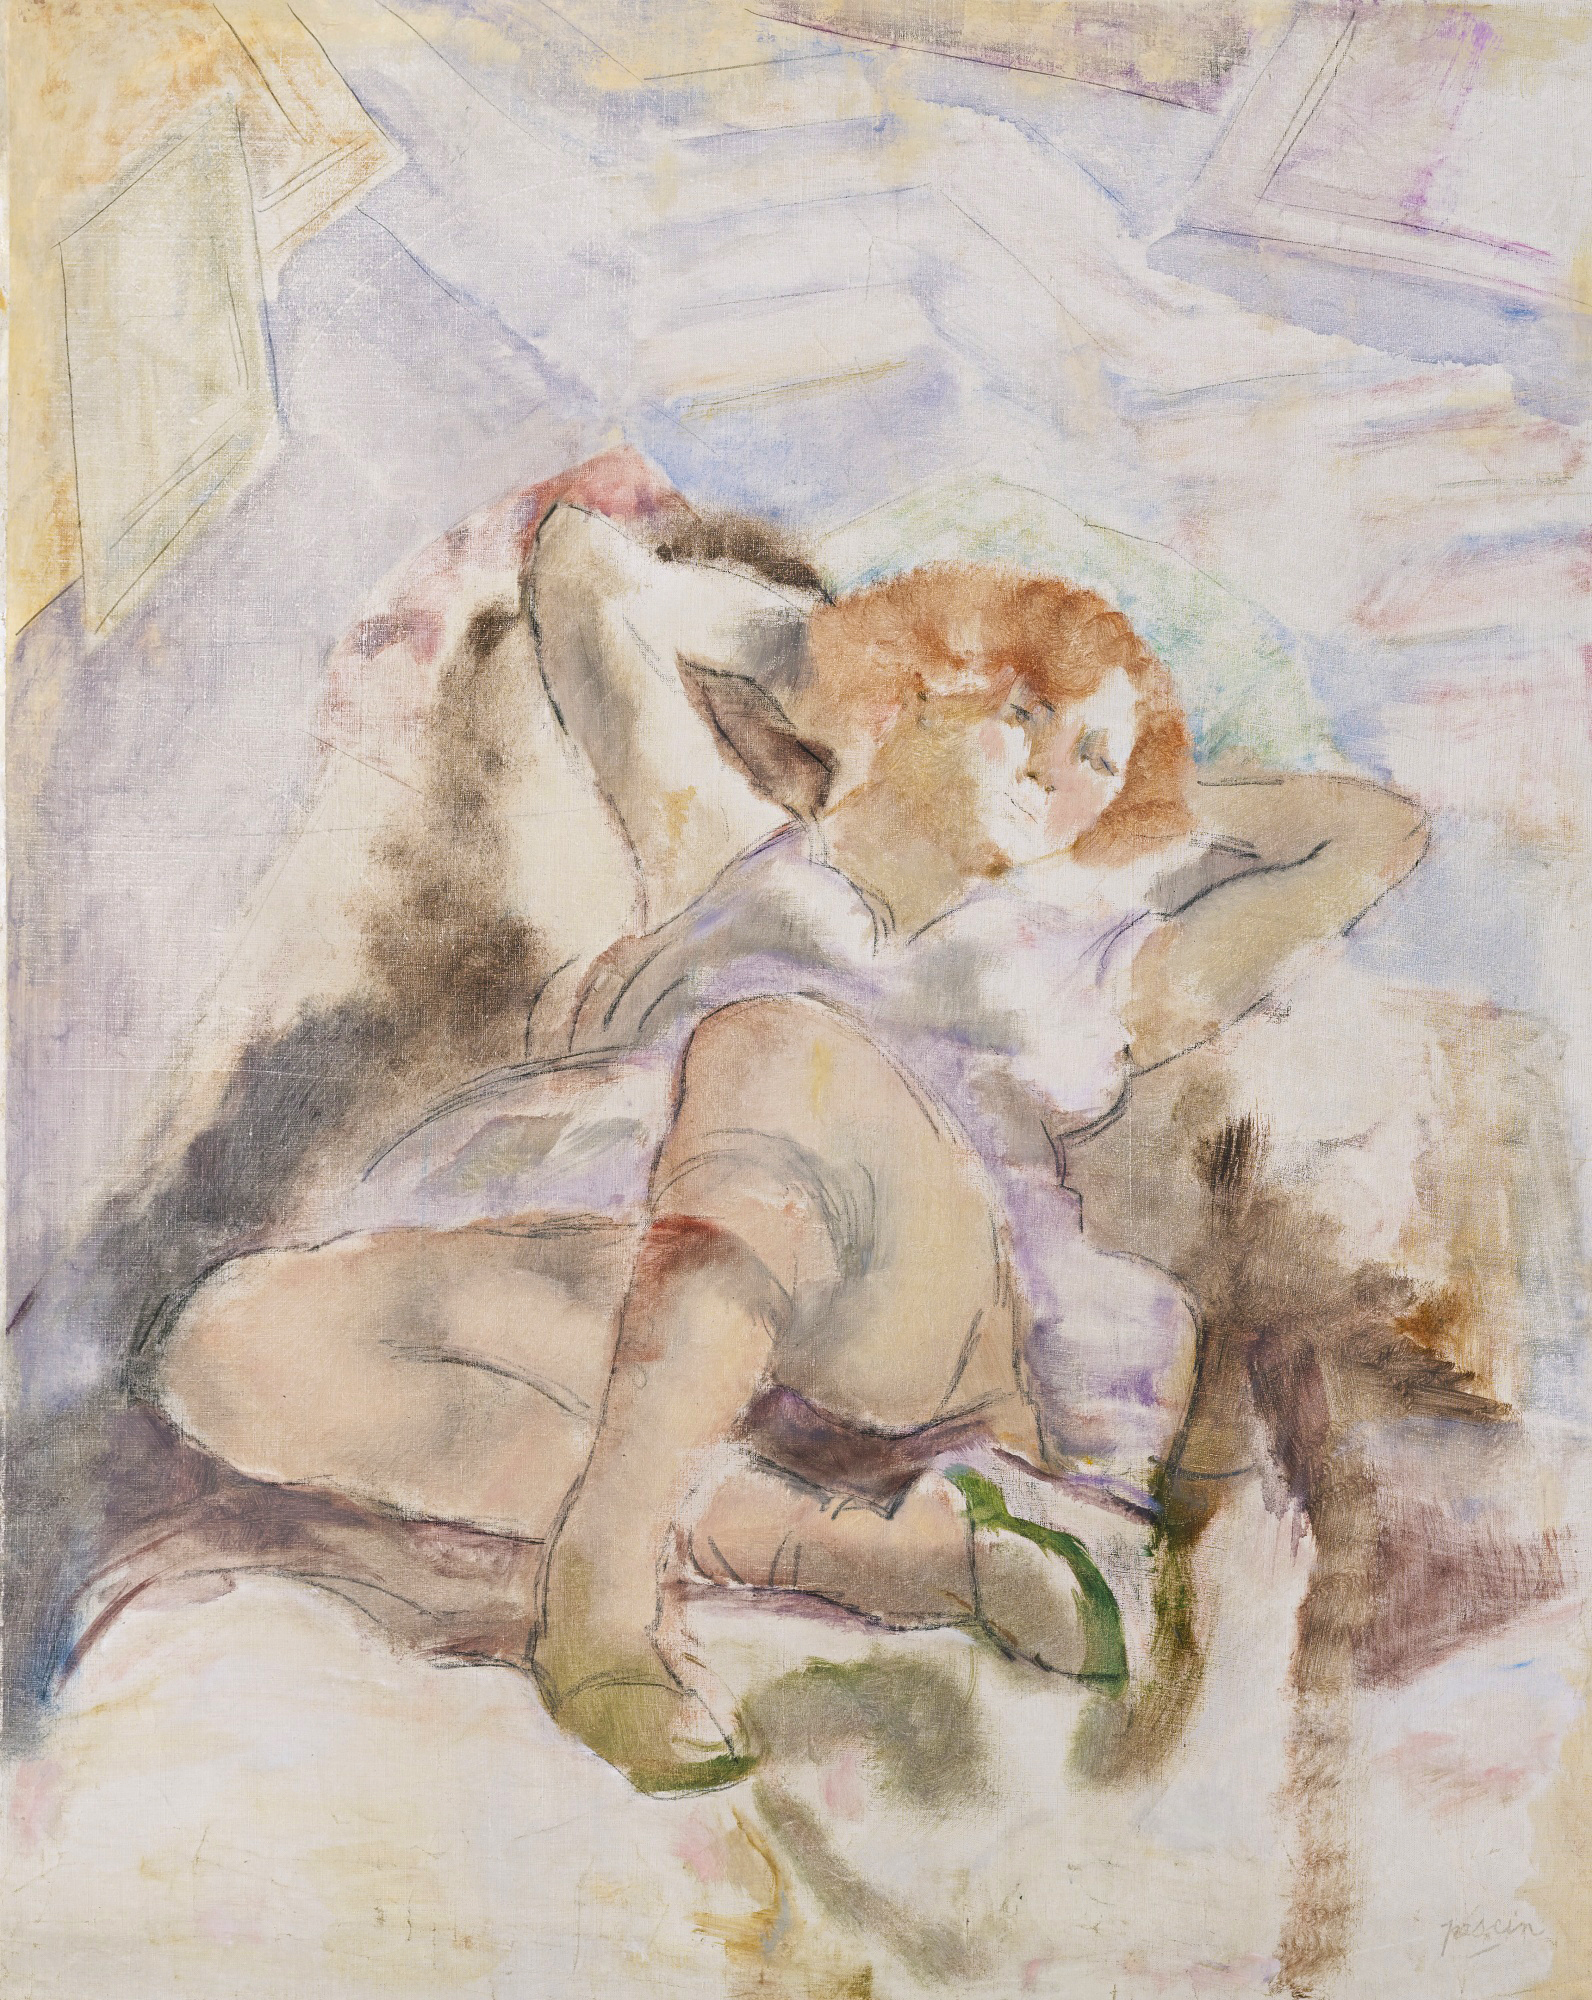 Jules PASCIN La Rousse (Jeune femme allongée) 1928 Huile sur toile, 92,3x73,4cm signé en bas à droite, Coll. part.